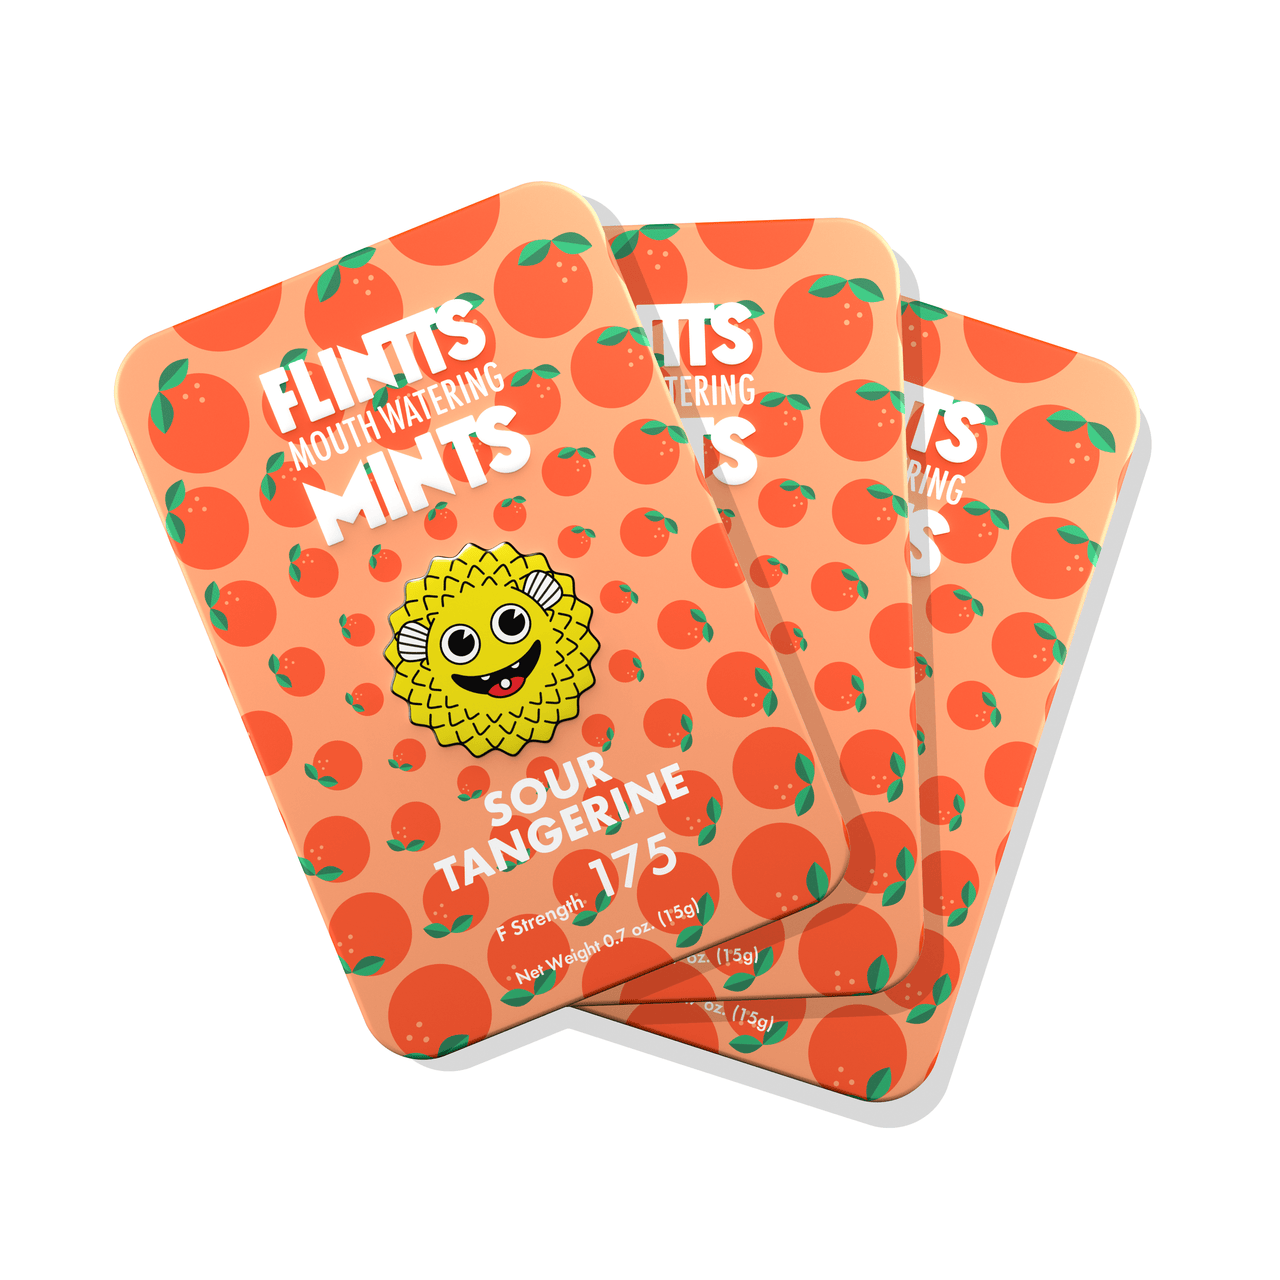 Flintts Mouthwatering Mints Sour Tangerine 3-Pack | Mints | 420 Science